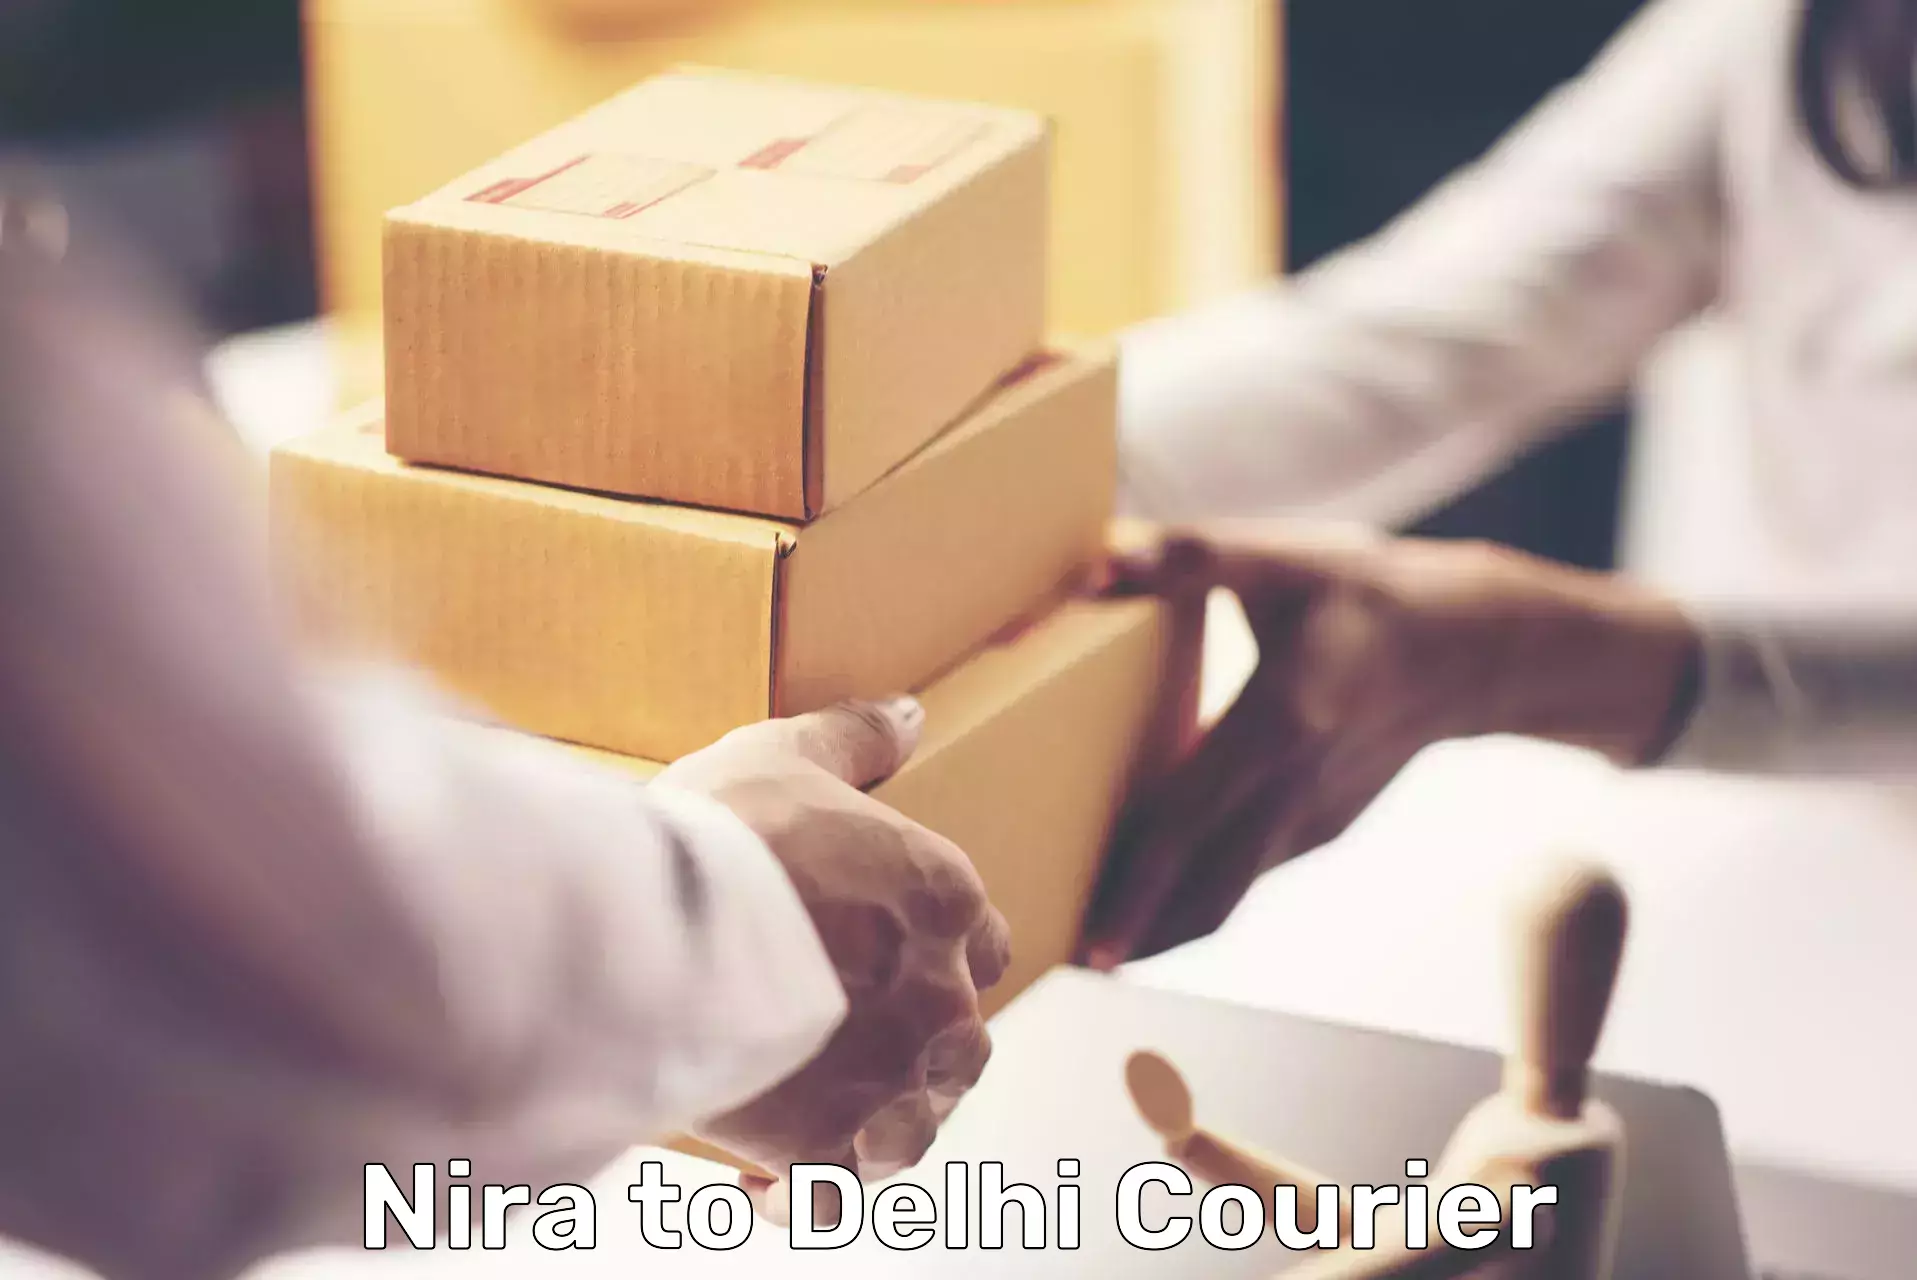 Fast delivery service in Nira to Delhi